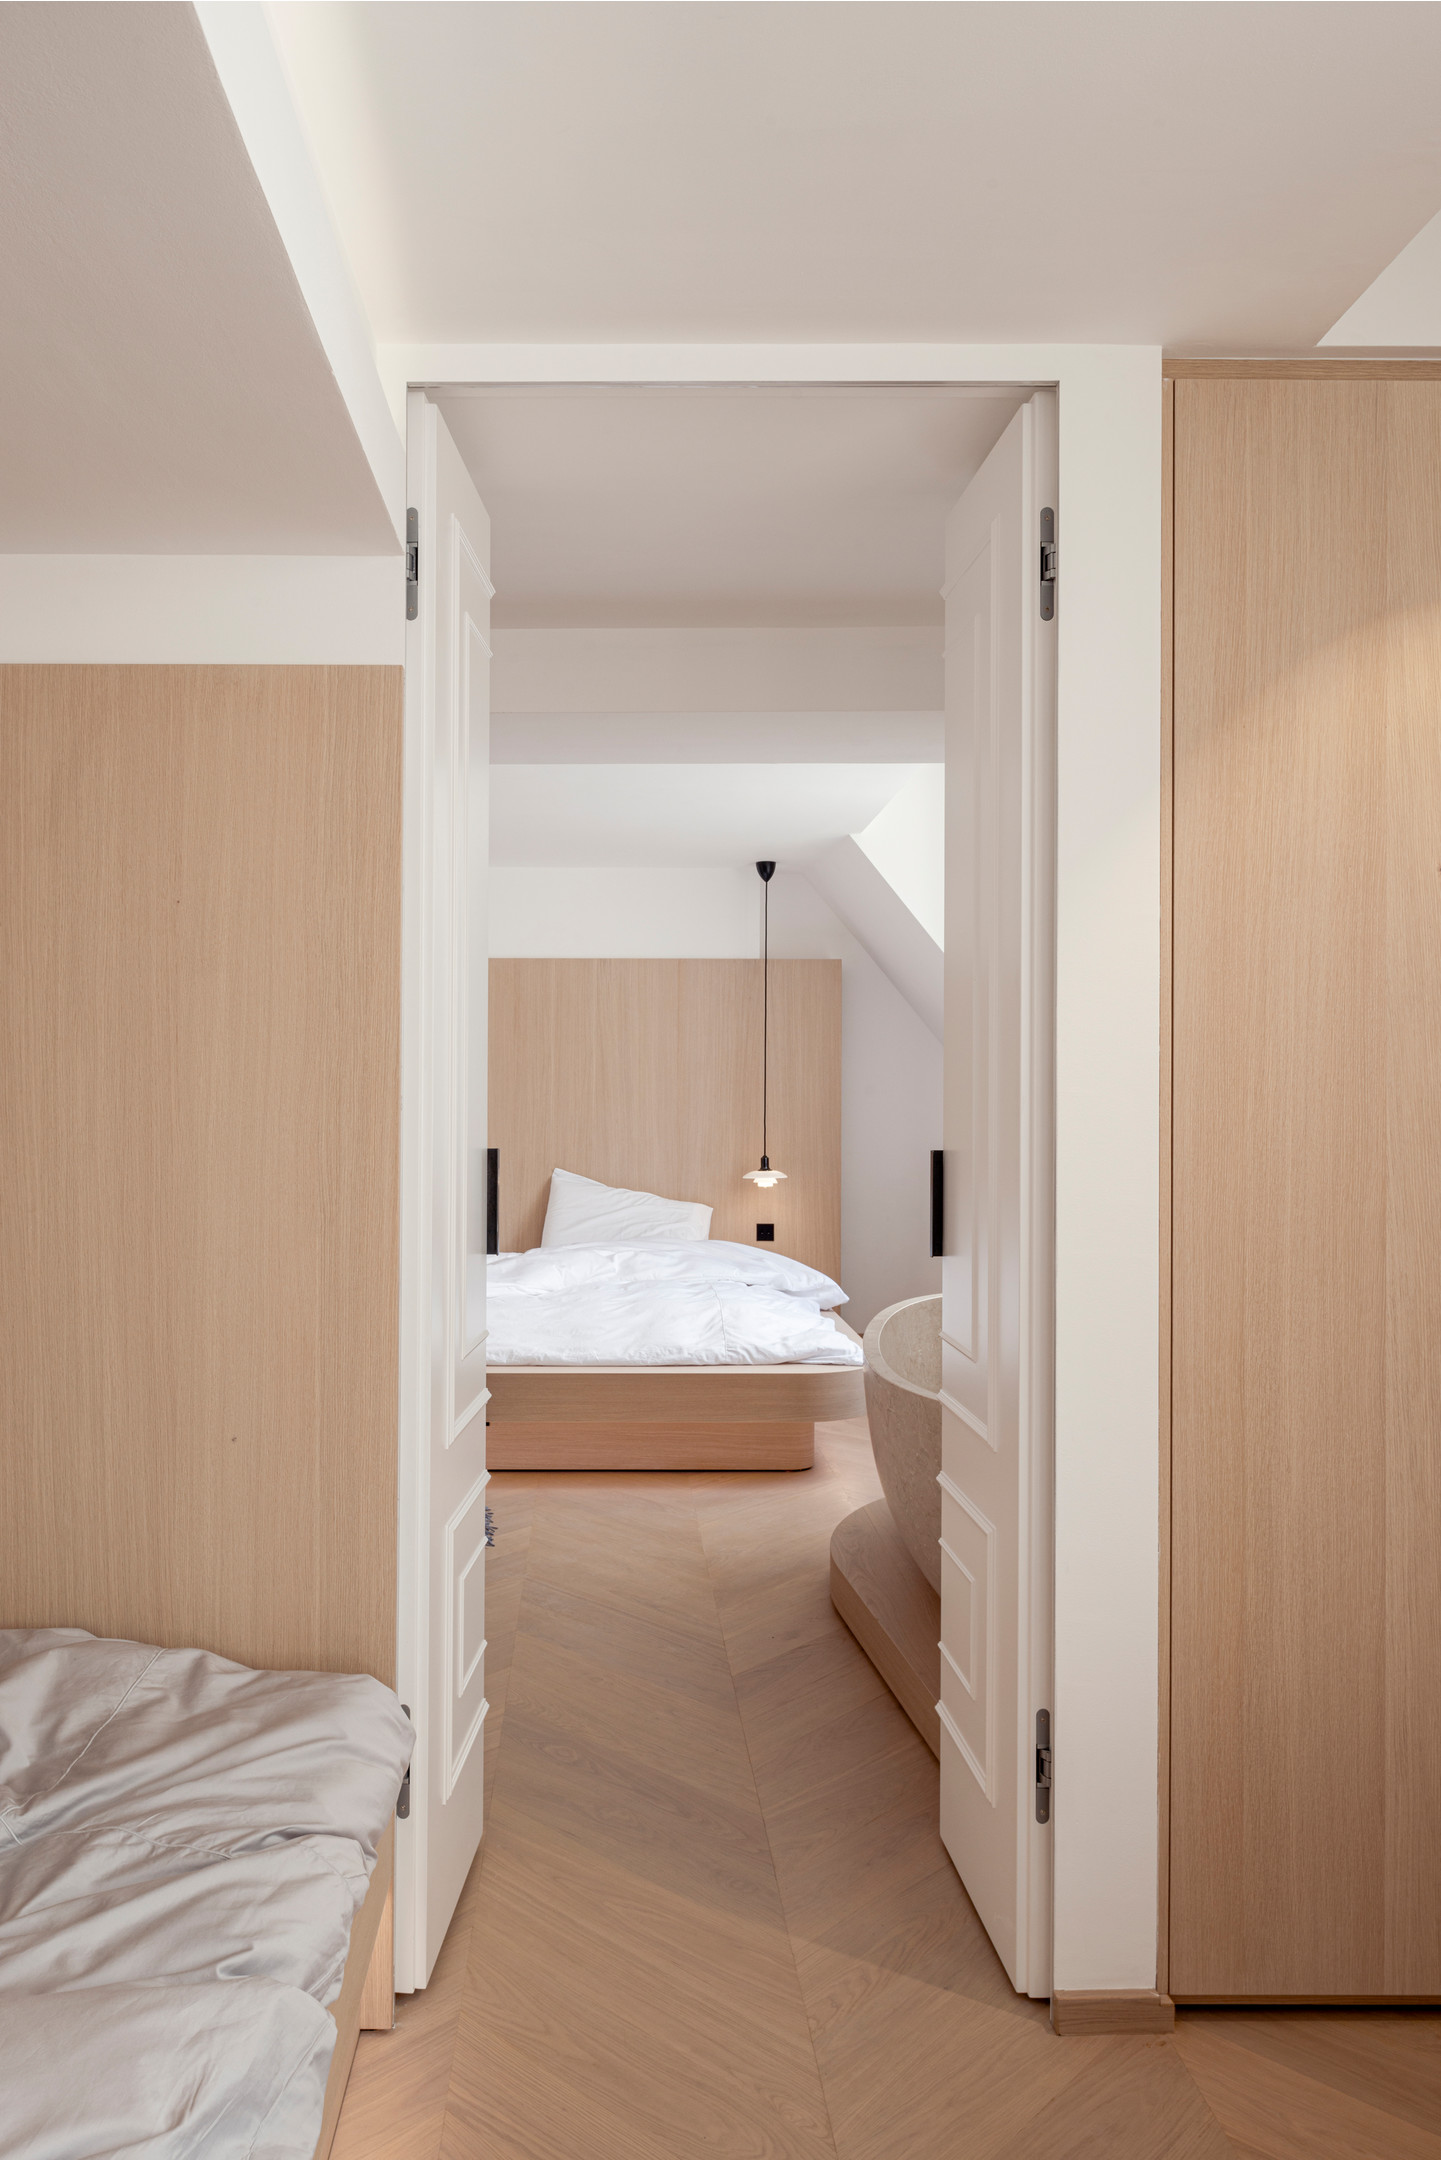 Không gian tầng trên tương đối rộng rãi với các phòng ngủ ngủ chính và phụ, kết hợp phòng tắm tiện ích. Nội thất vẫn đảm bảo sự tối giản, sắc màu nhẹ nhàng tương tự như phong cách của tầng dưới.